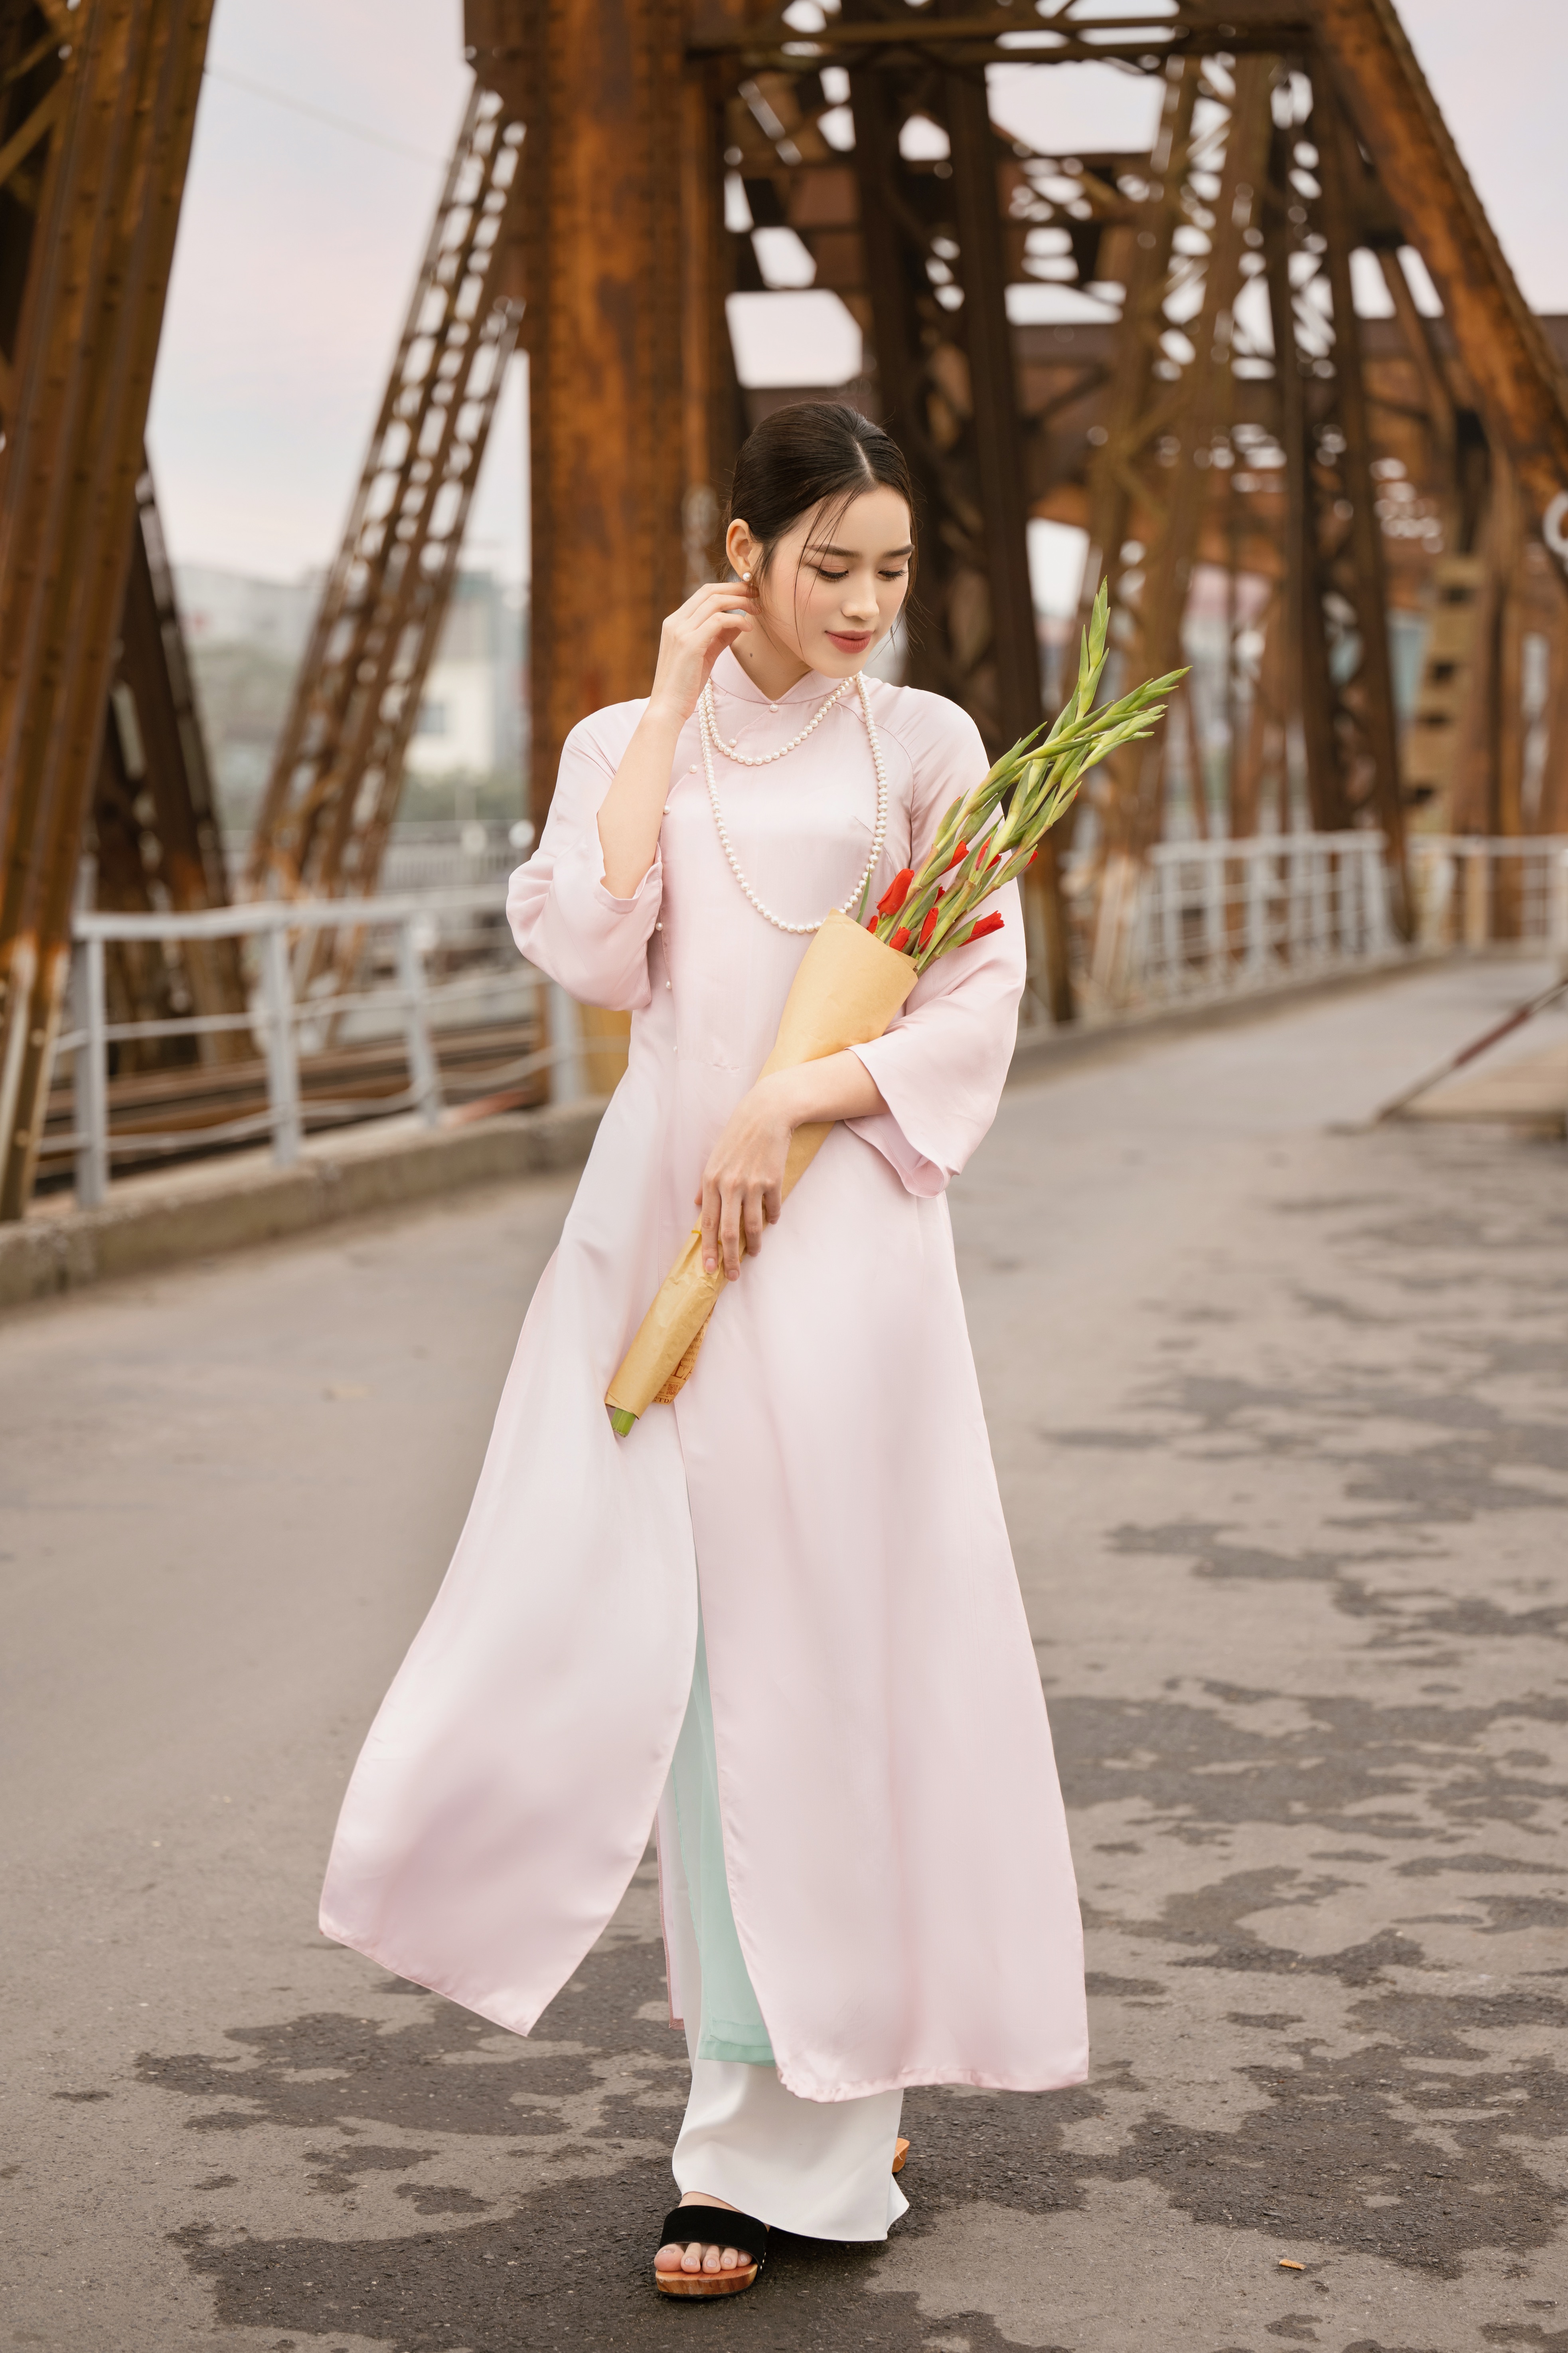 Tin tức giải trí - Hoa hậu Đỗ Hà diện áo dài dạo phố xuân Hà Thành trước thềm Tết nguyên đán (Hình 3).